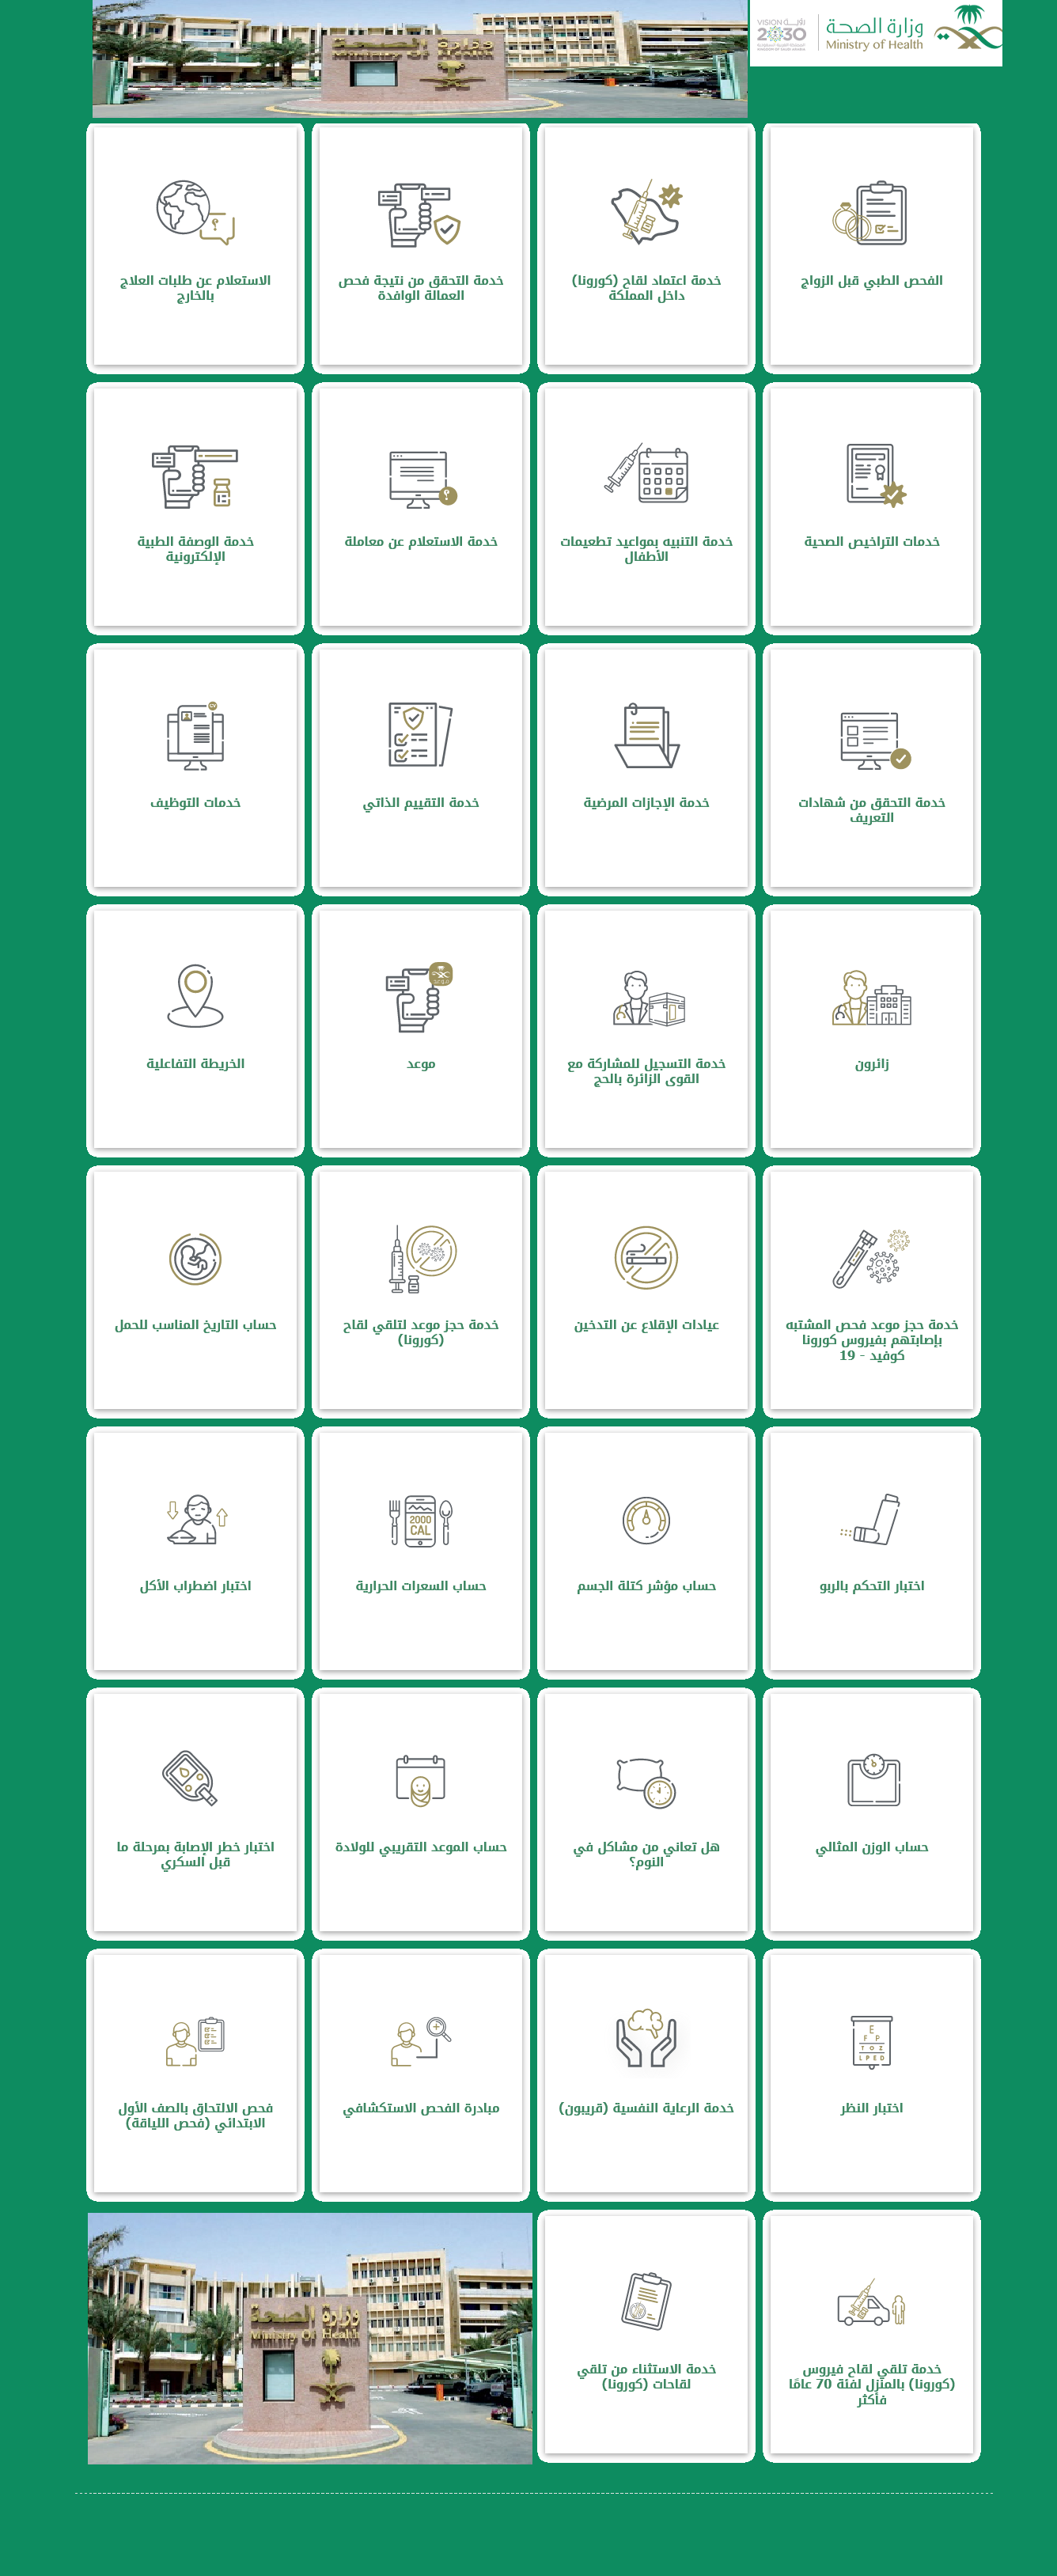 اختبار الاكتئاب والقلق والتوتر على موقع وزارة الصحة السعودية والخدمات  الإلكترونية الصحية